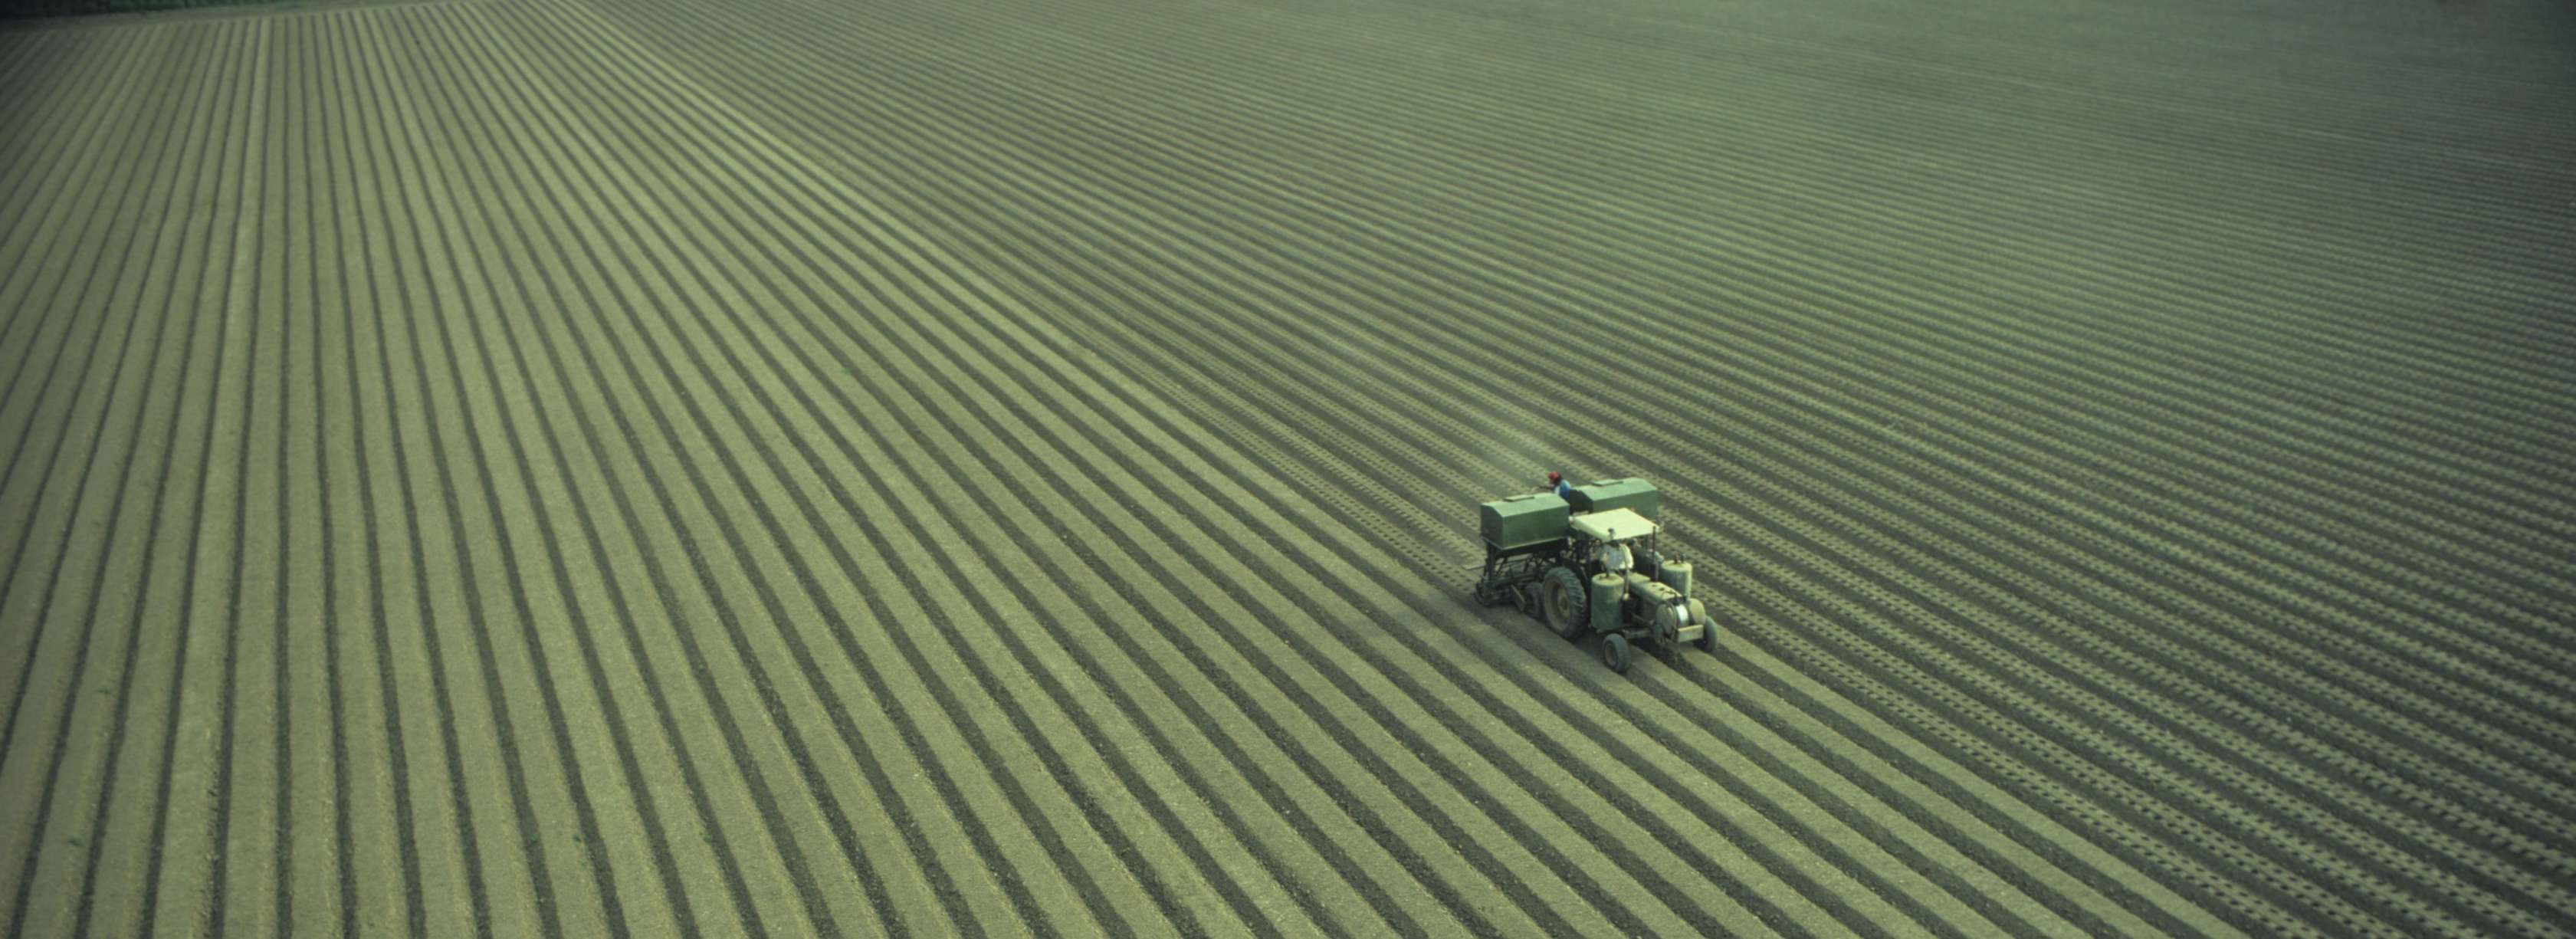 Ein Traktor mäht den Rasen auf dem Feld.